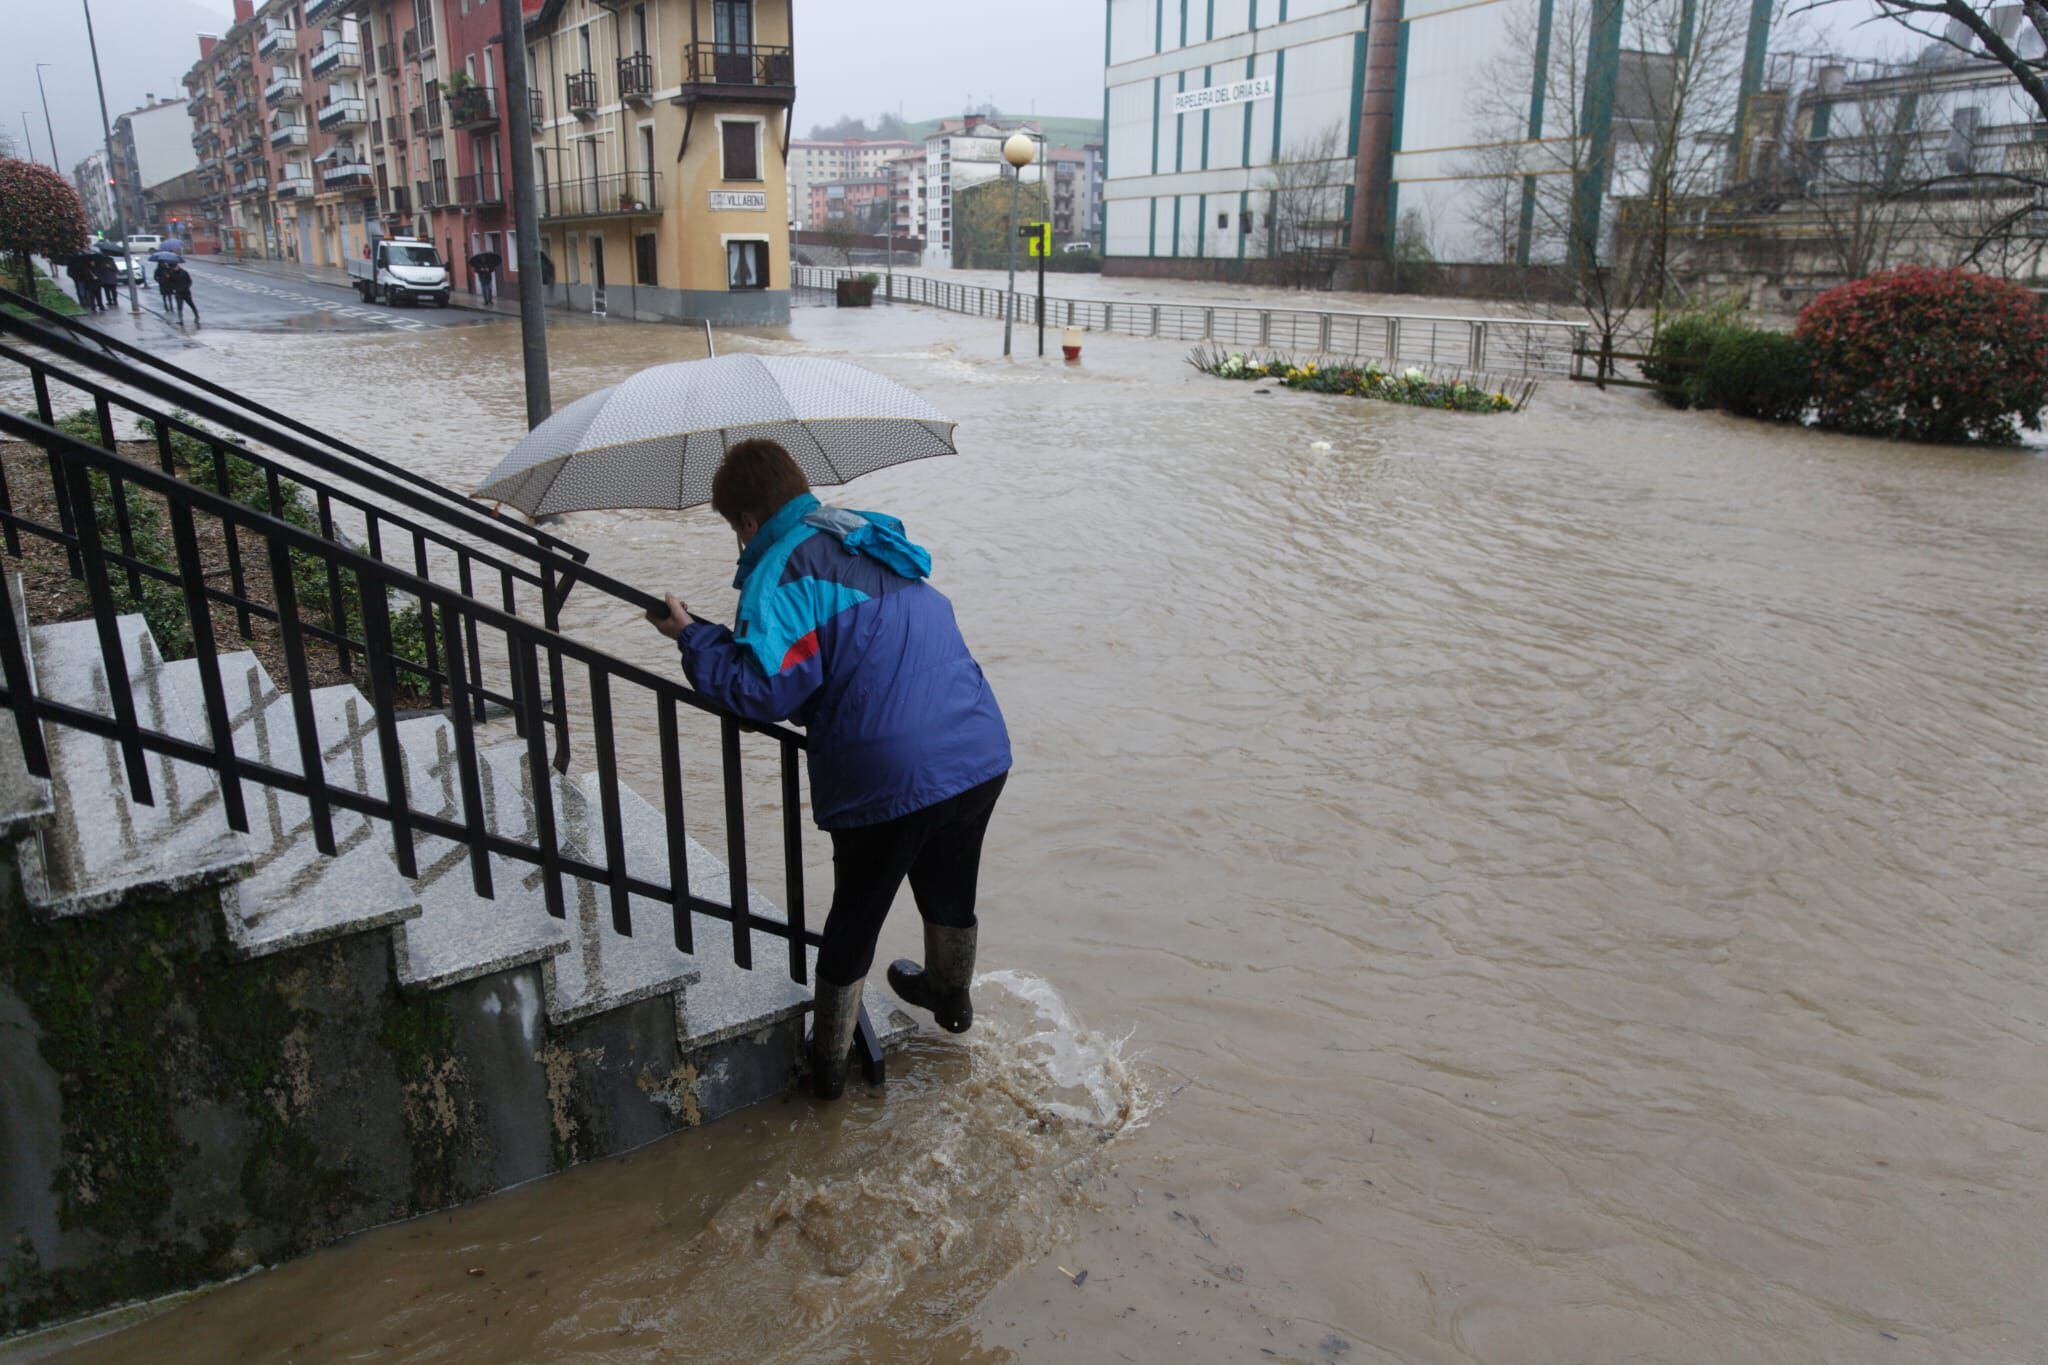 Una persona trata de sortear el agua en las inundaciones registradas este martes en Villabona (Gipuzkoa) tras desbordarse el río Oria.